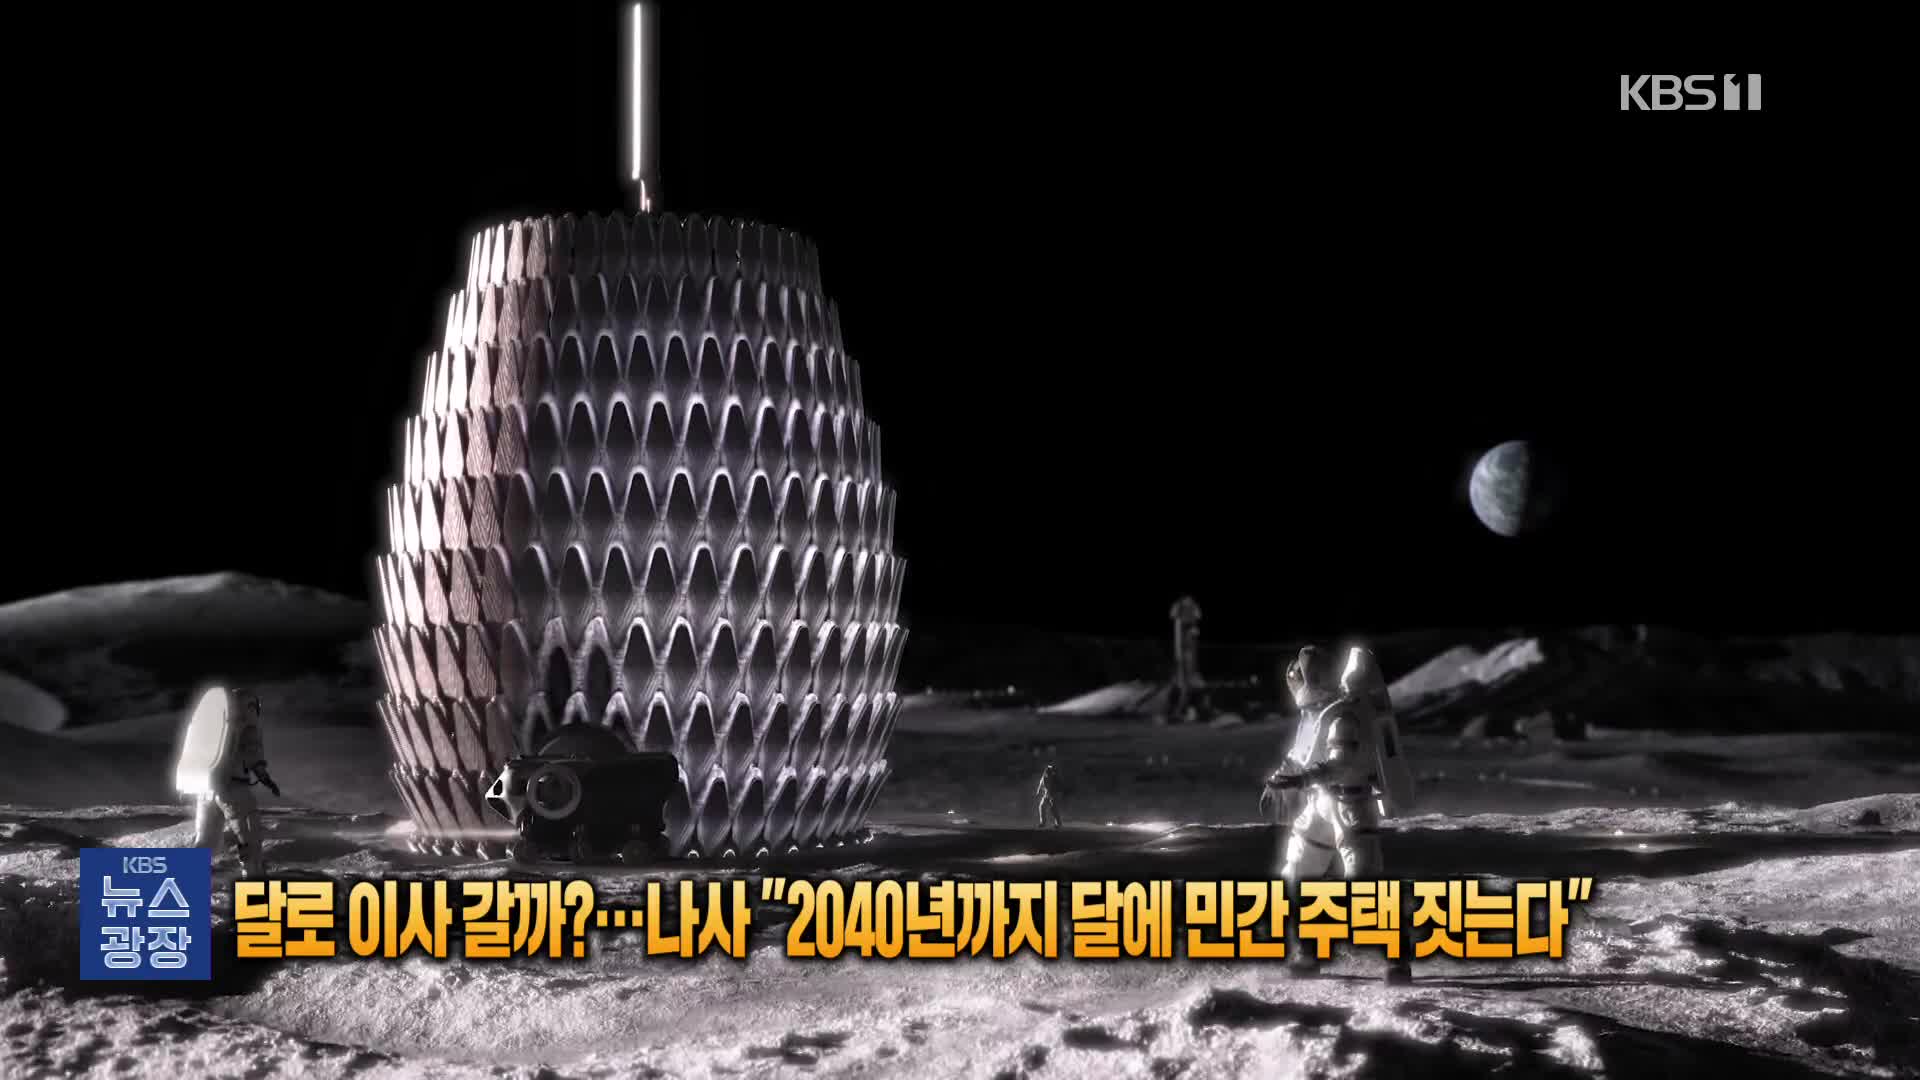 [잇슈 SNS] “달로 이사갈까”…나사, 2040년까지 달에 민간주택 짓는다